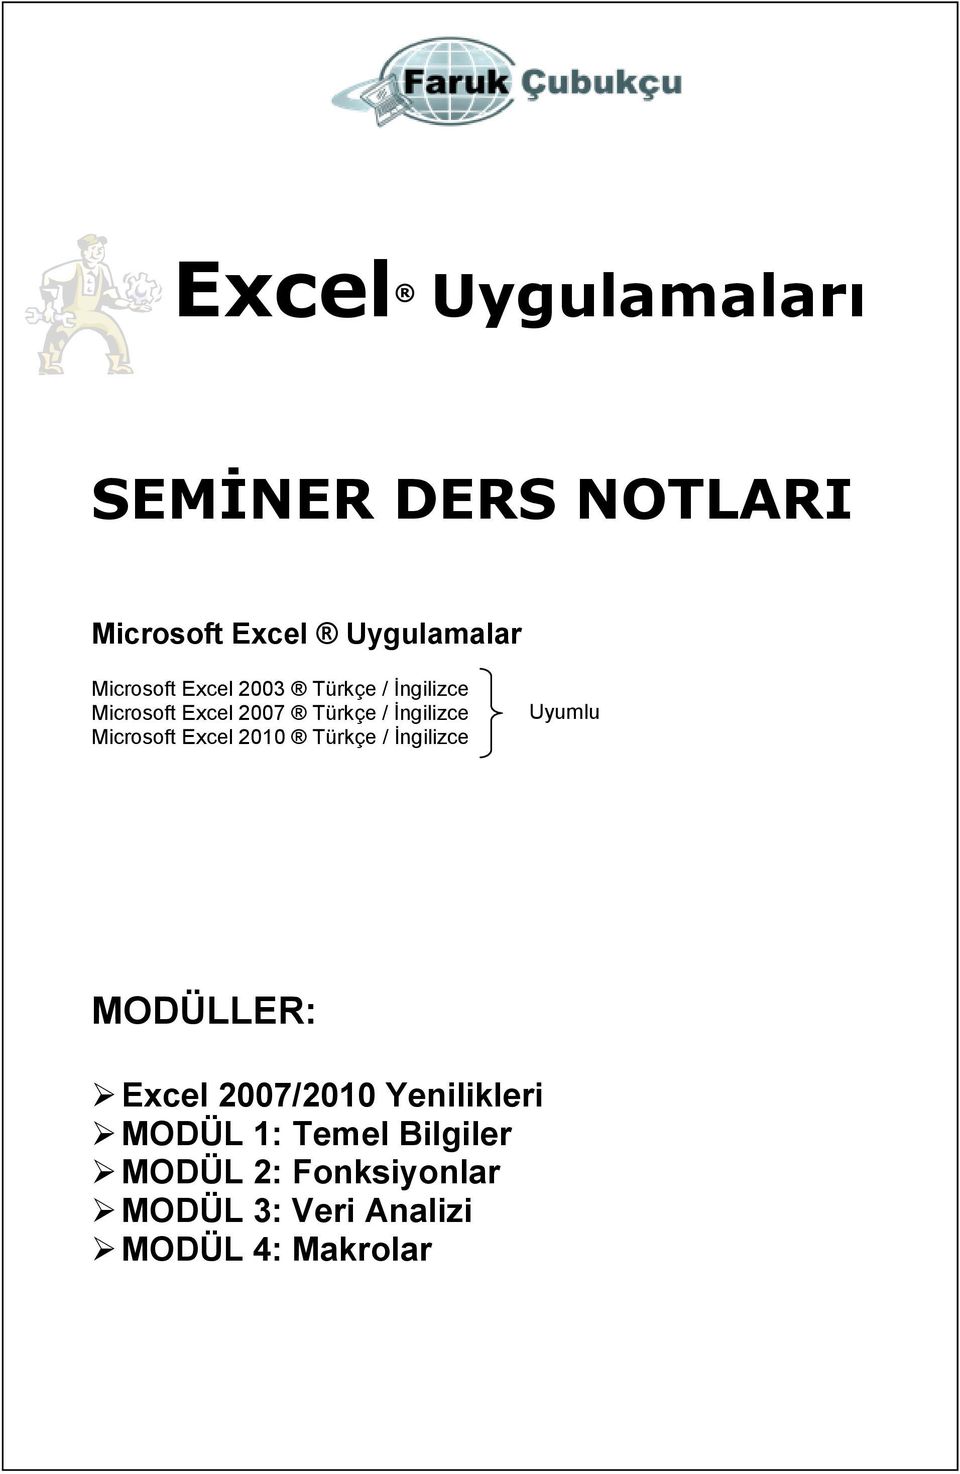 Excel 2010 Türkçe / Ġngilizce Uyumlu MODÜLLER: Excel 2007/2010 Yenilikleri